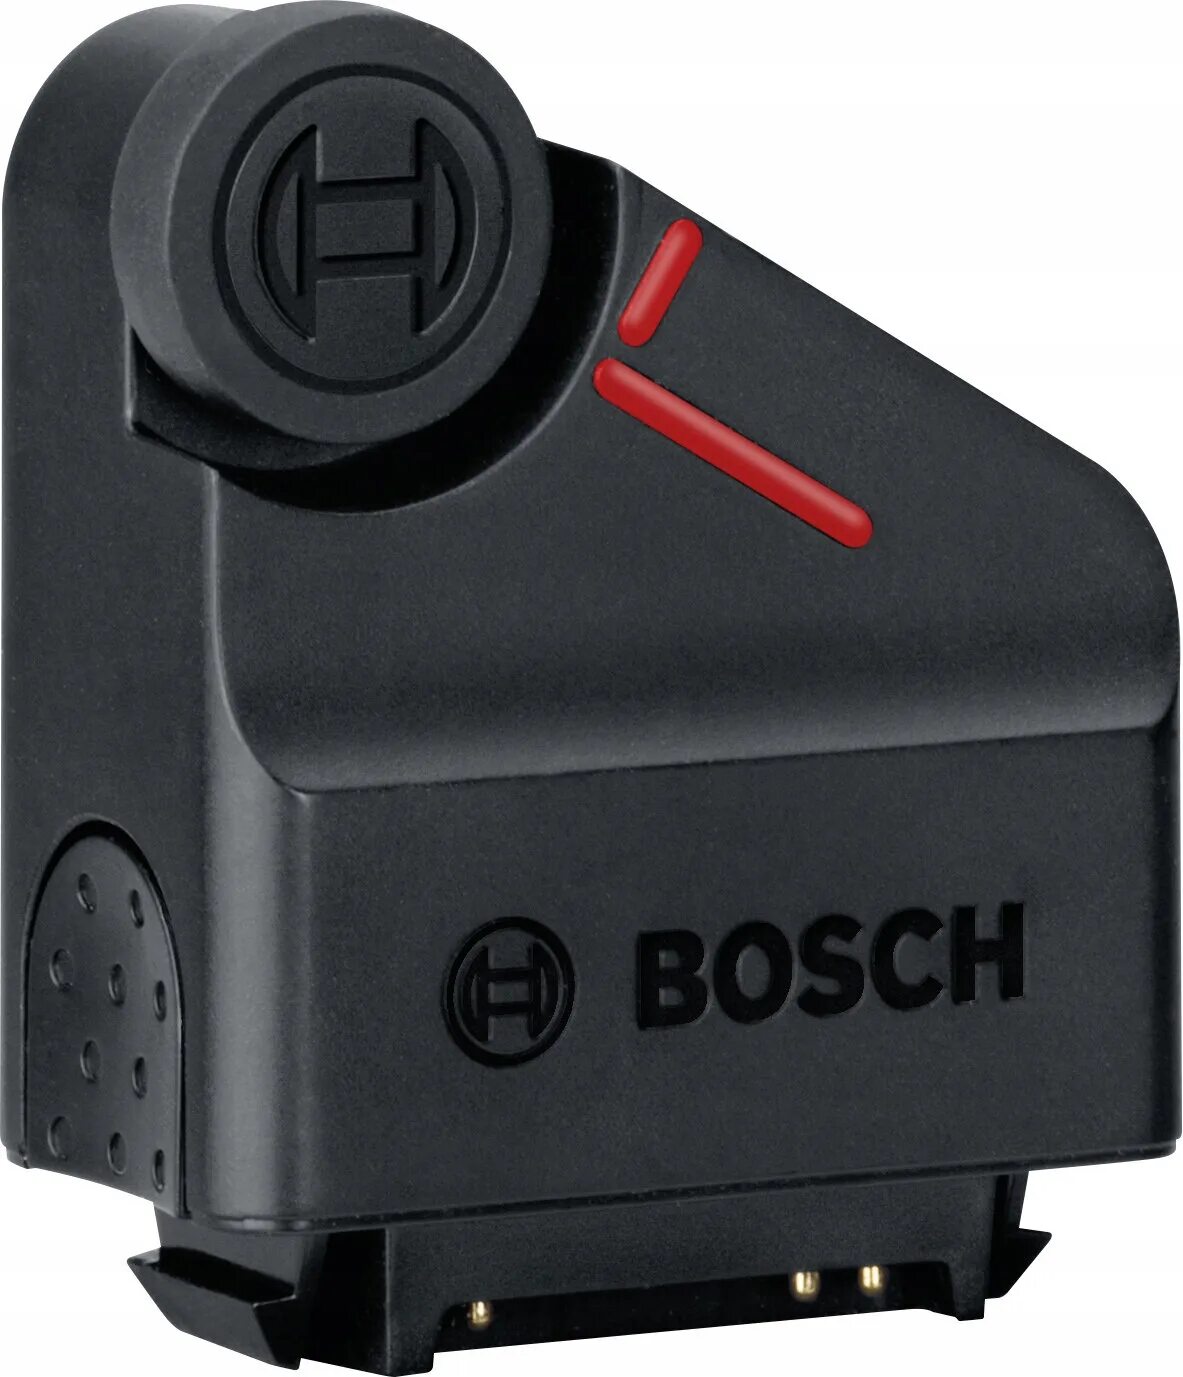 Bosch Zamo адаптер. Адаптер Рулетка Bosch для Zamo III. Адаптер для лазерной рулетки бош. Лазерный дальномер Bosch Zamo насадки.